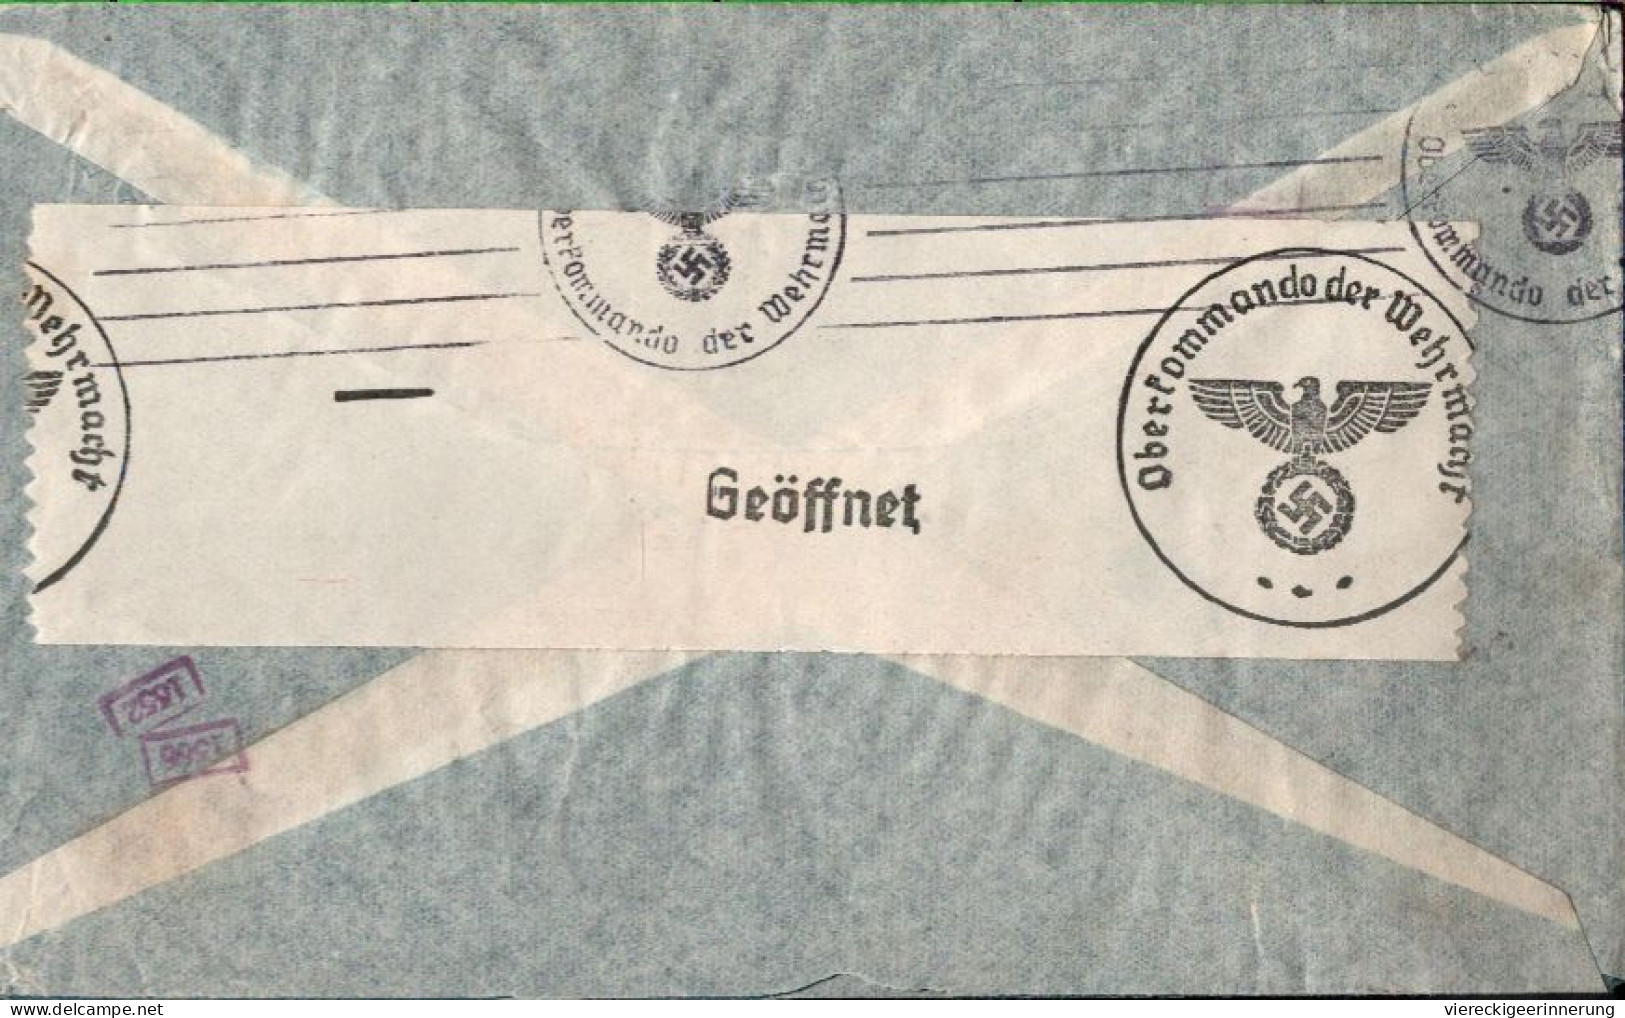 ! Argentinien 1940 Luftpost Brief Aus Buenos Aires Nach Berlin Mit OKW Zensur, Censor Mark, Airmail Via Condor - Cartas & Documentos